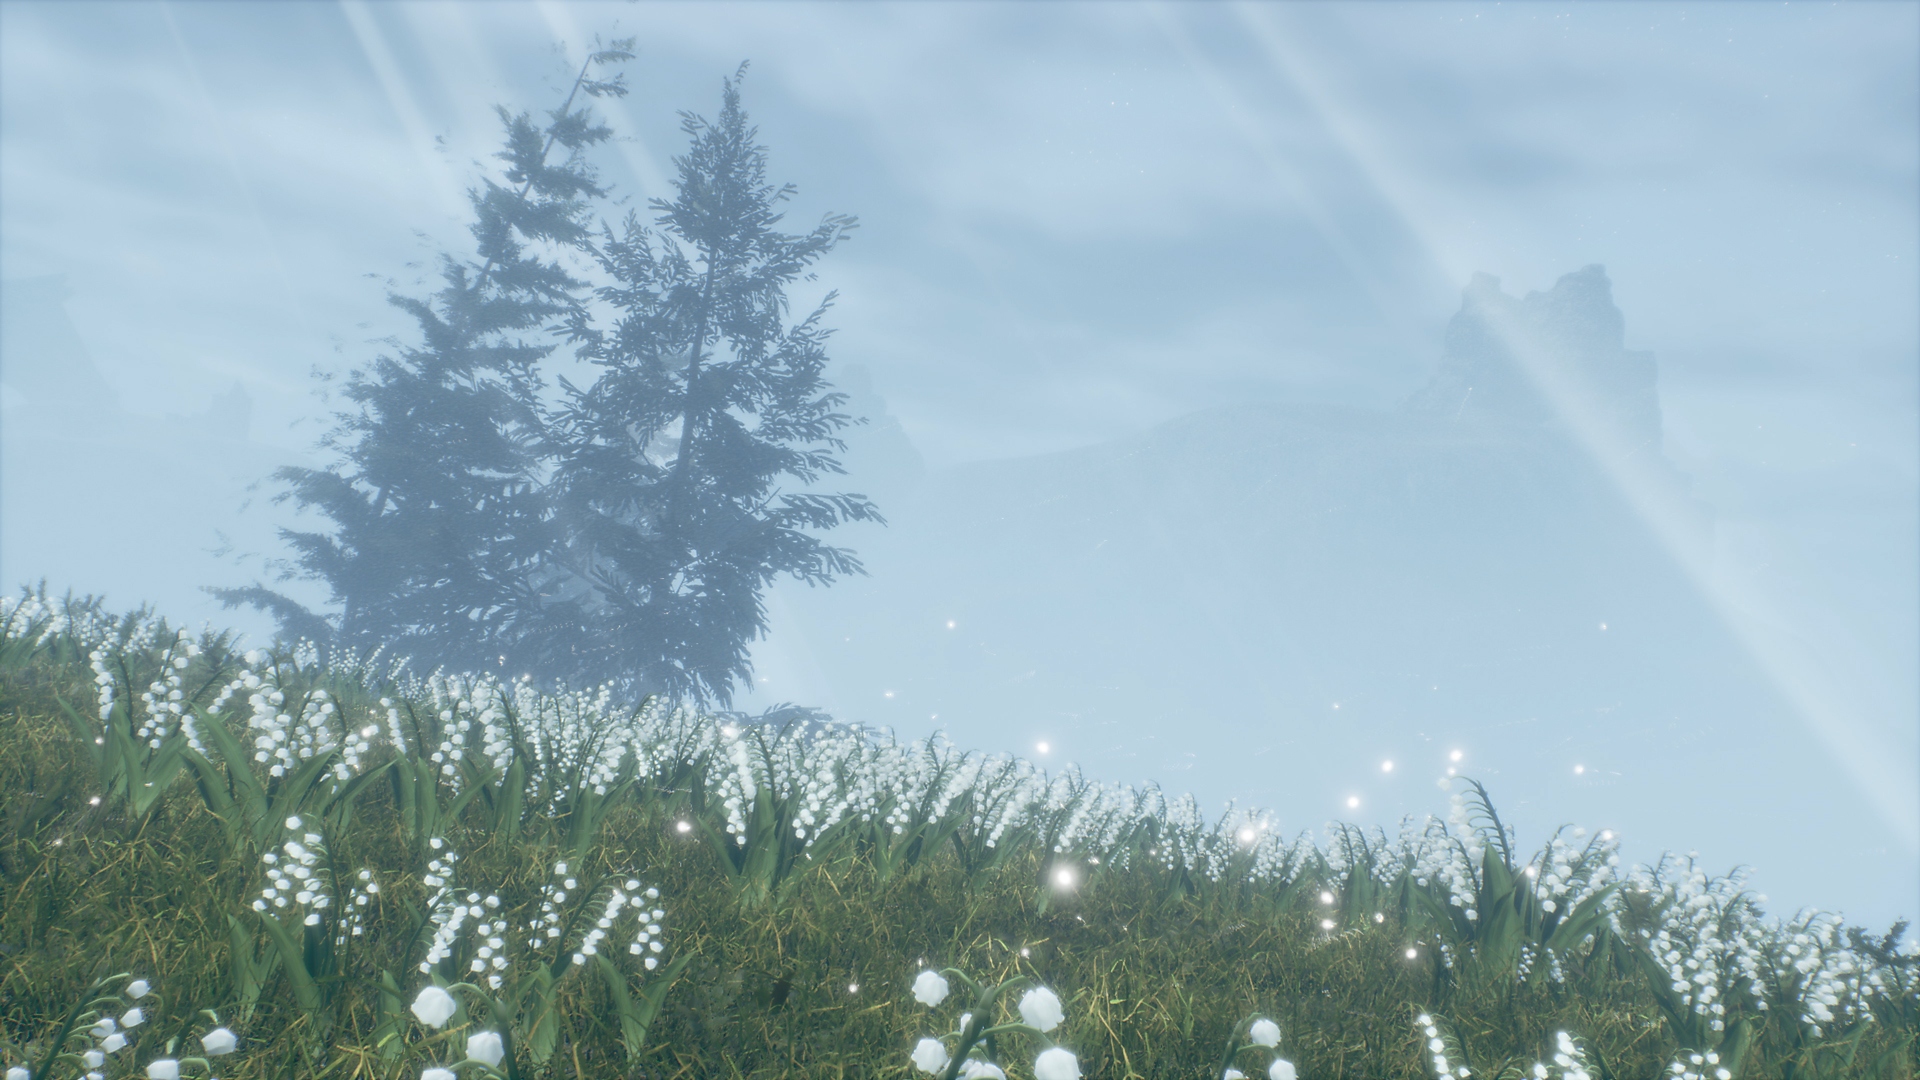 Valkyrie Elysium – zrzut ekranu przedstawiający dwa drzewa w trawiastym obszarze